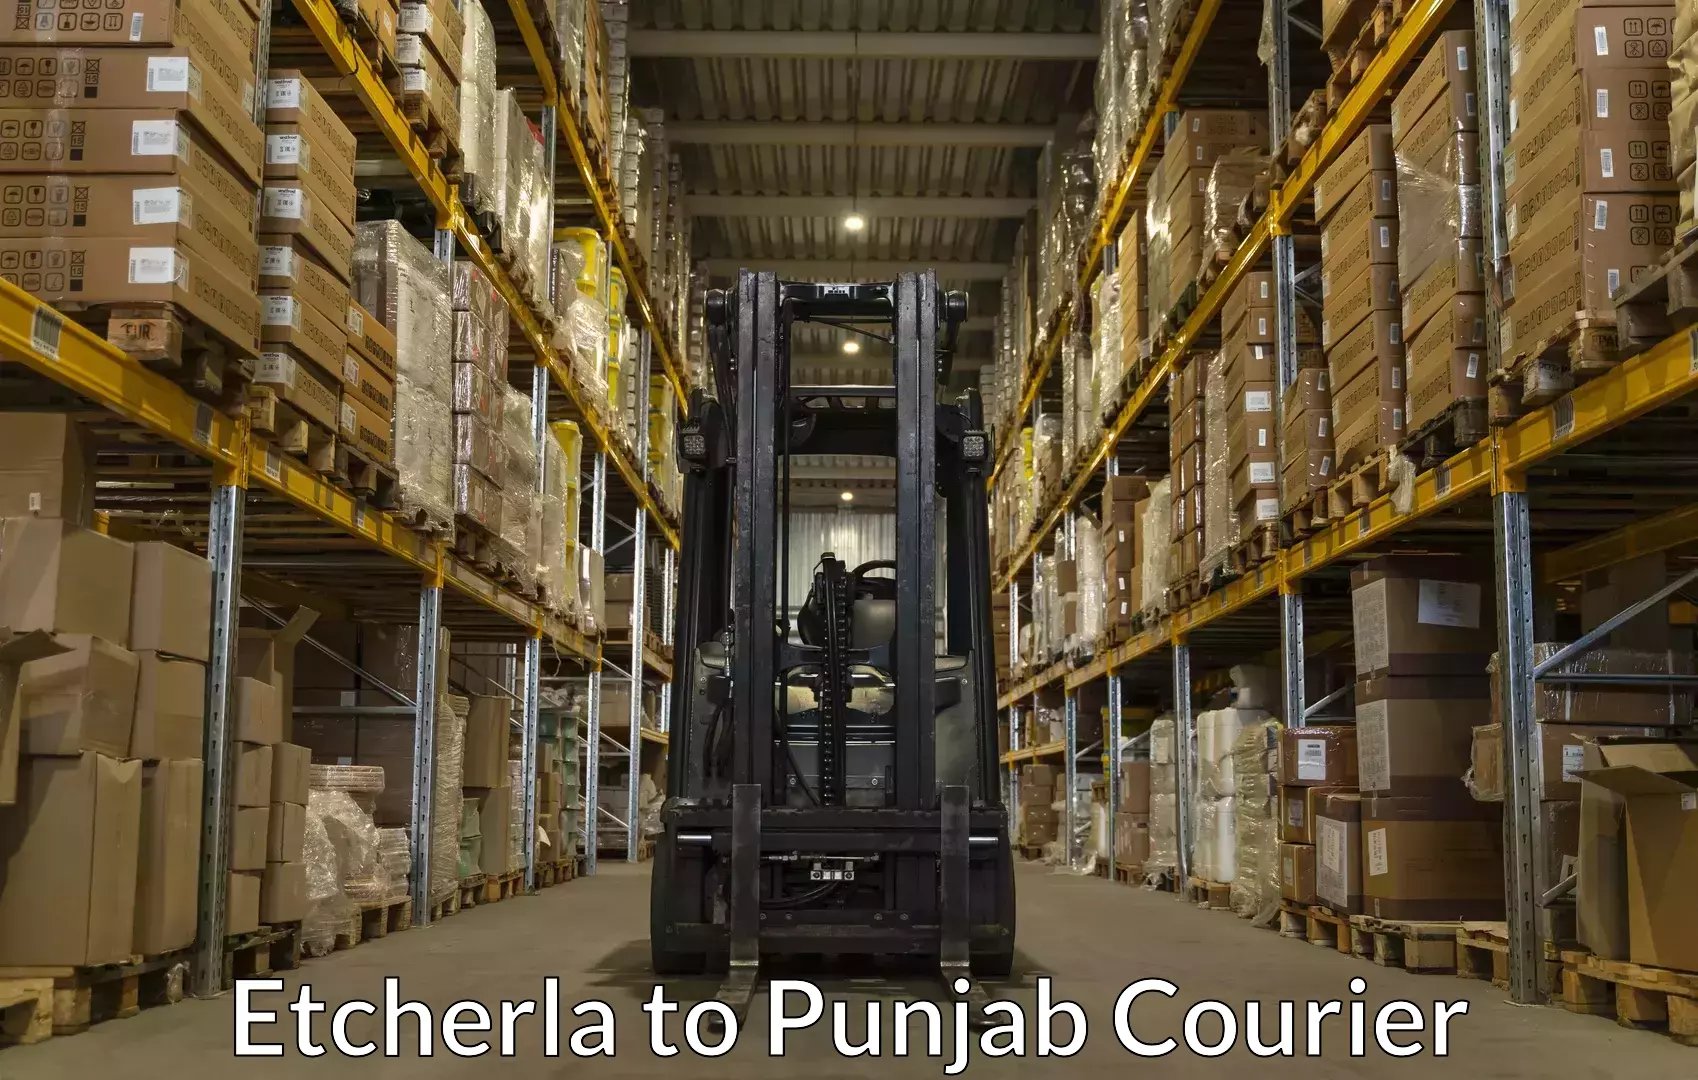 Skilled movers Etcherla to Central University of Punjab Bathinda